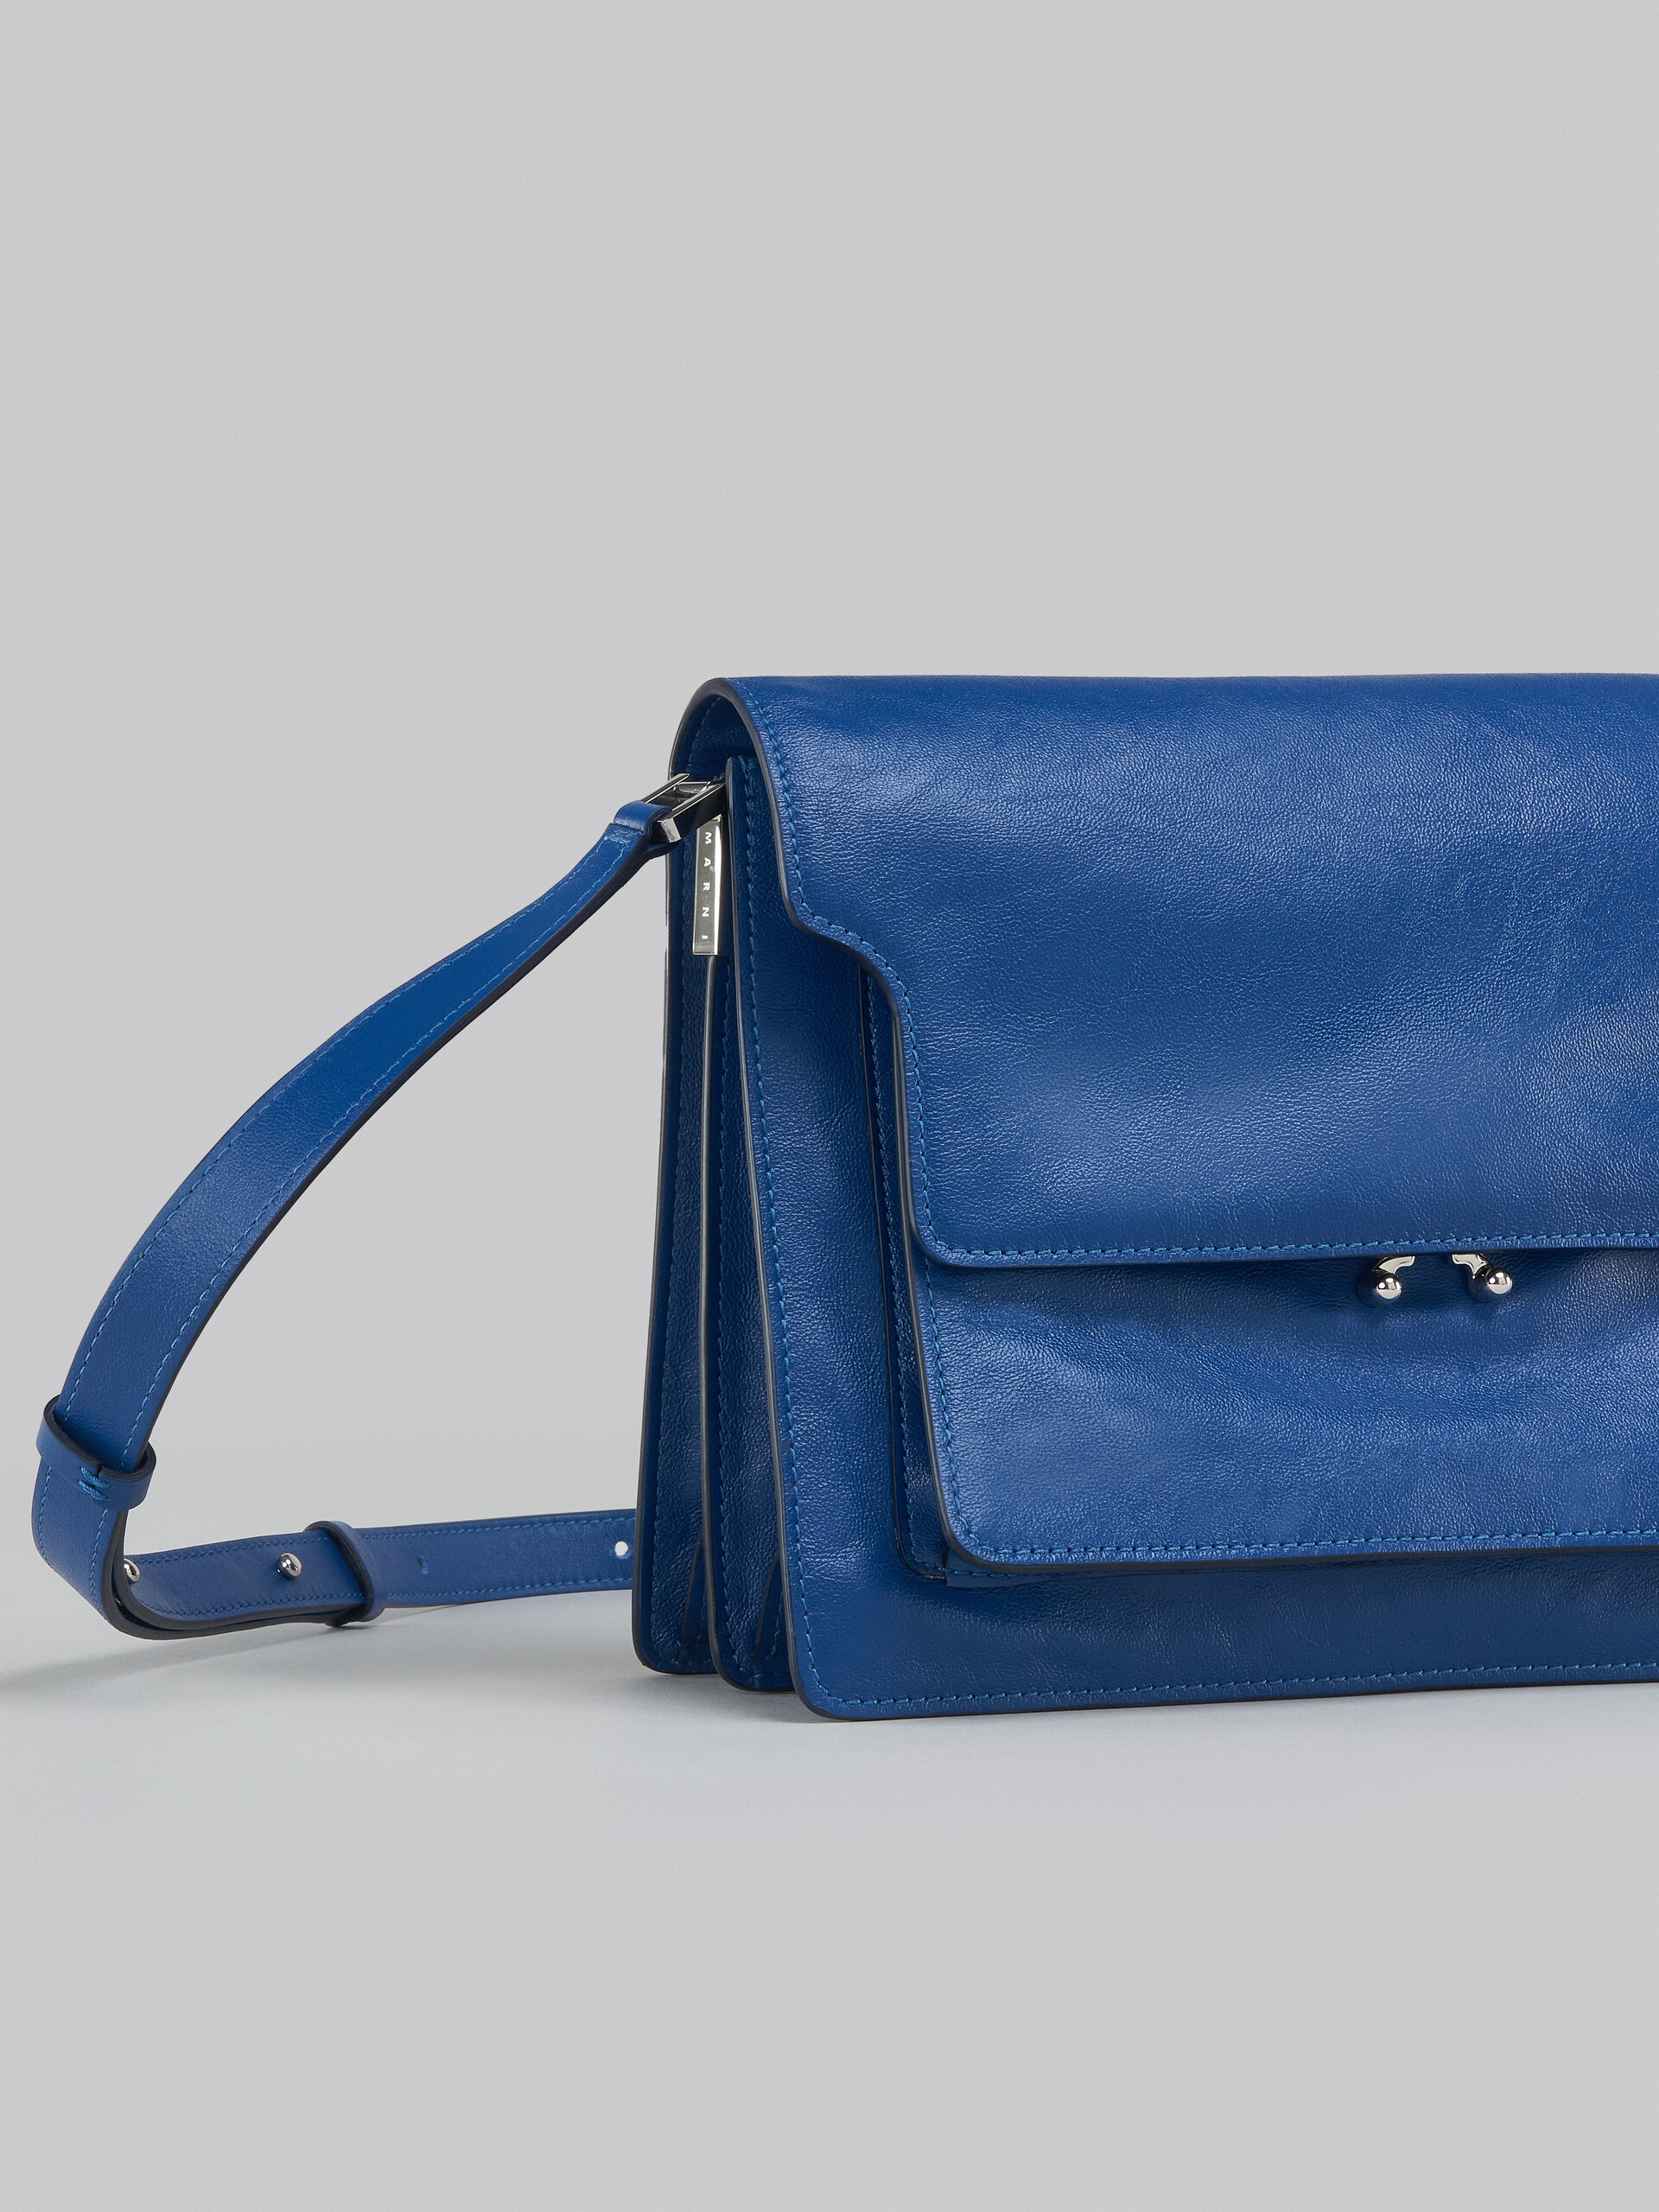 Trunk Soft Large Bag in blue leather - Shoulder Bags - Image 5